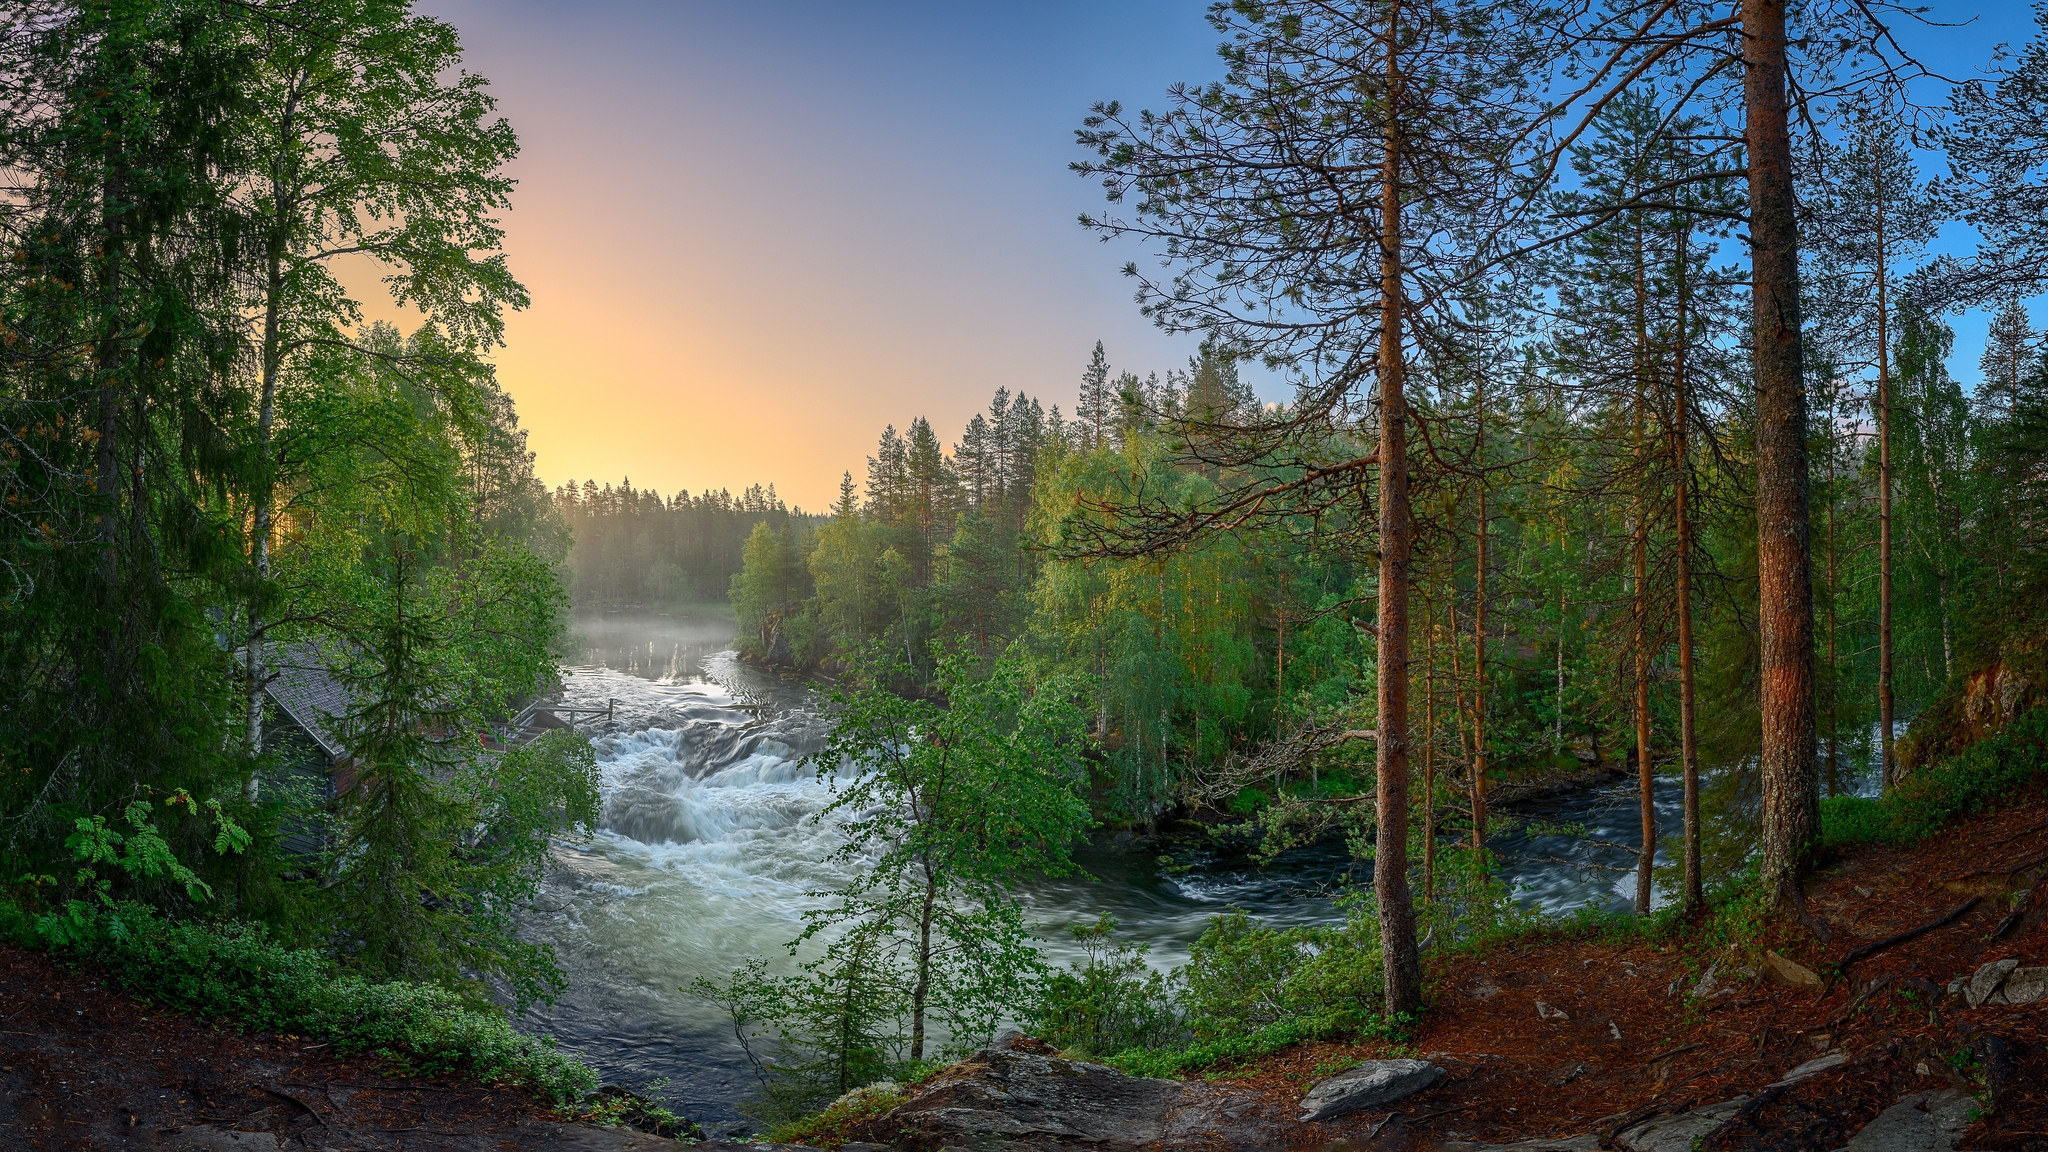 Обои на телефон река. Кивач Карелия. Тайга (хвойные леса) реки Сыктывкар. Карело-финская природа. Таежные леса Карелии.